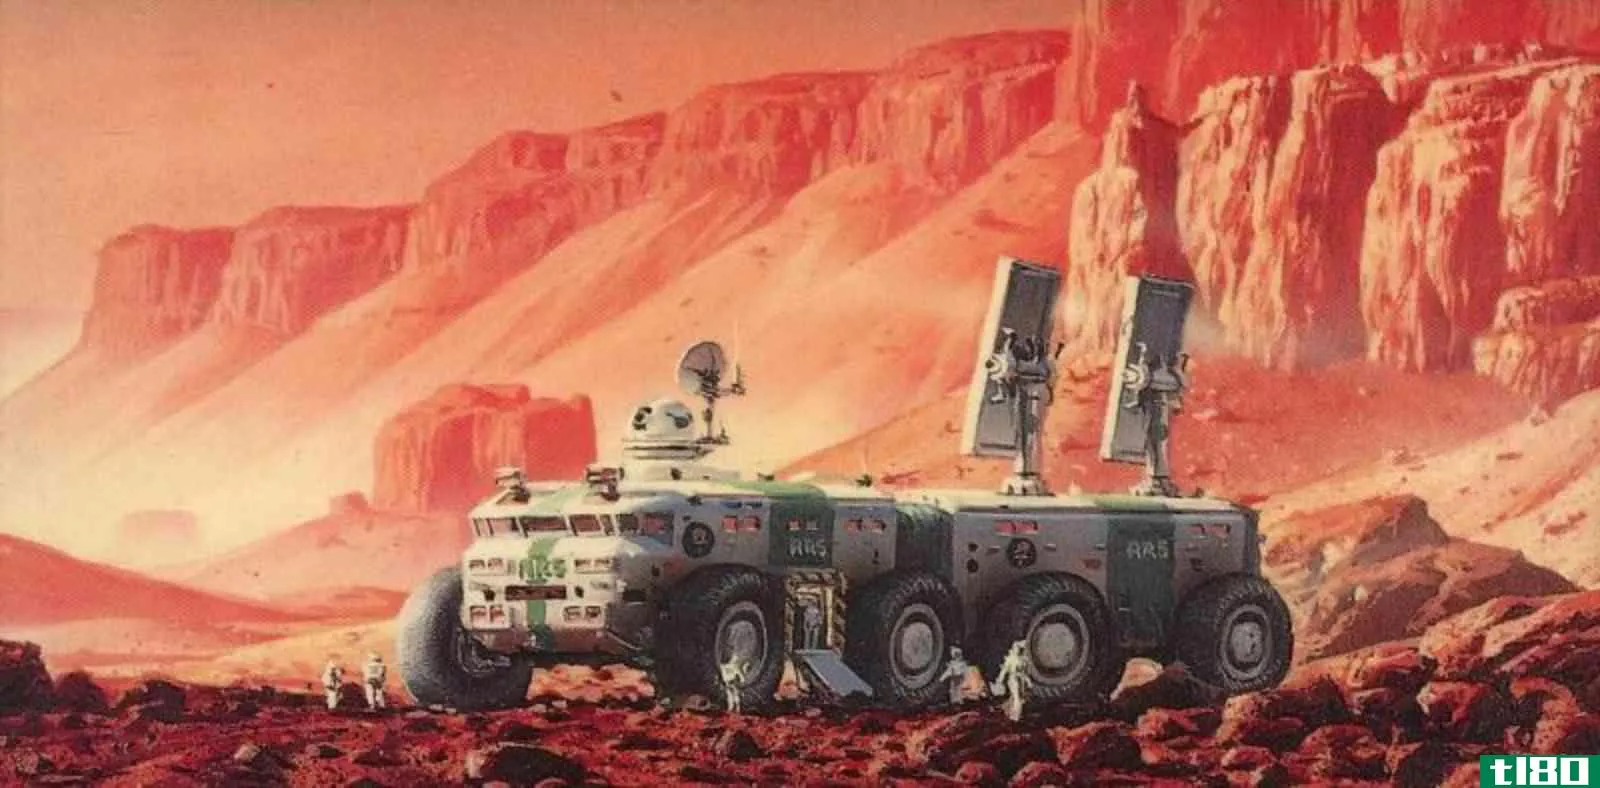 科幻小说是如何想象殖民我们的太阳系和更远